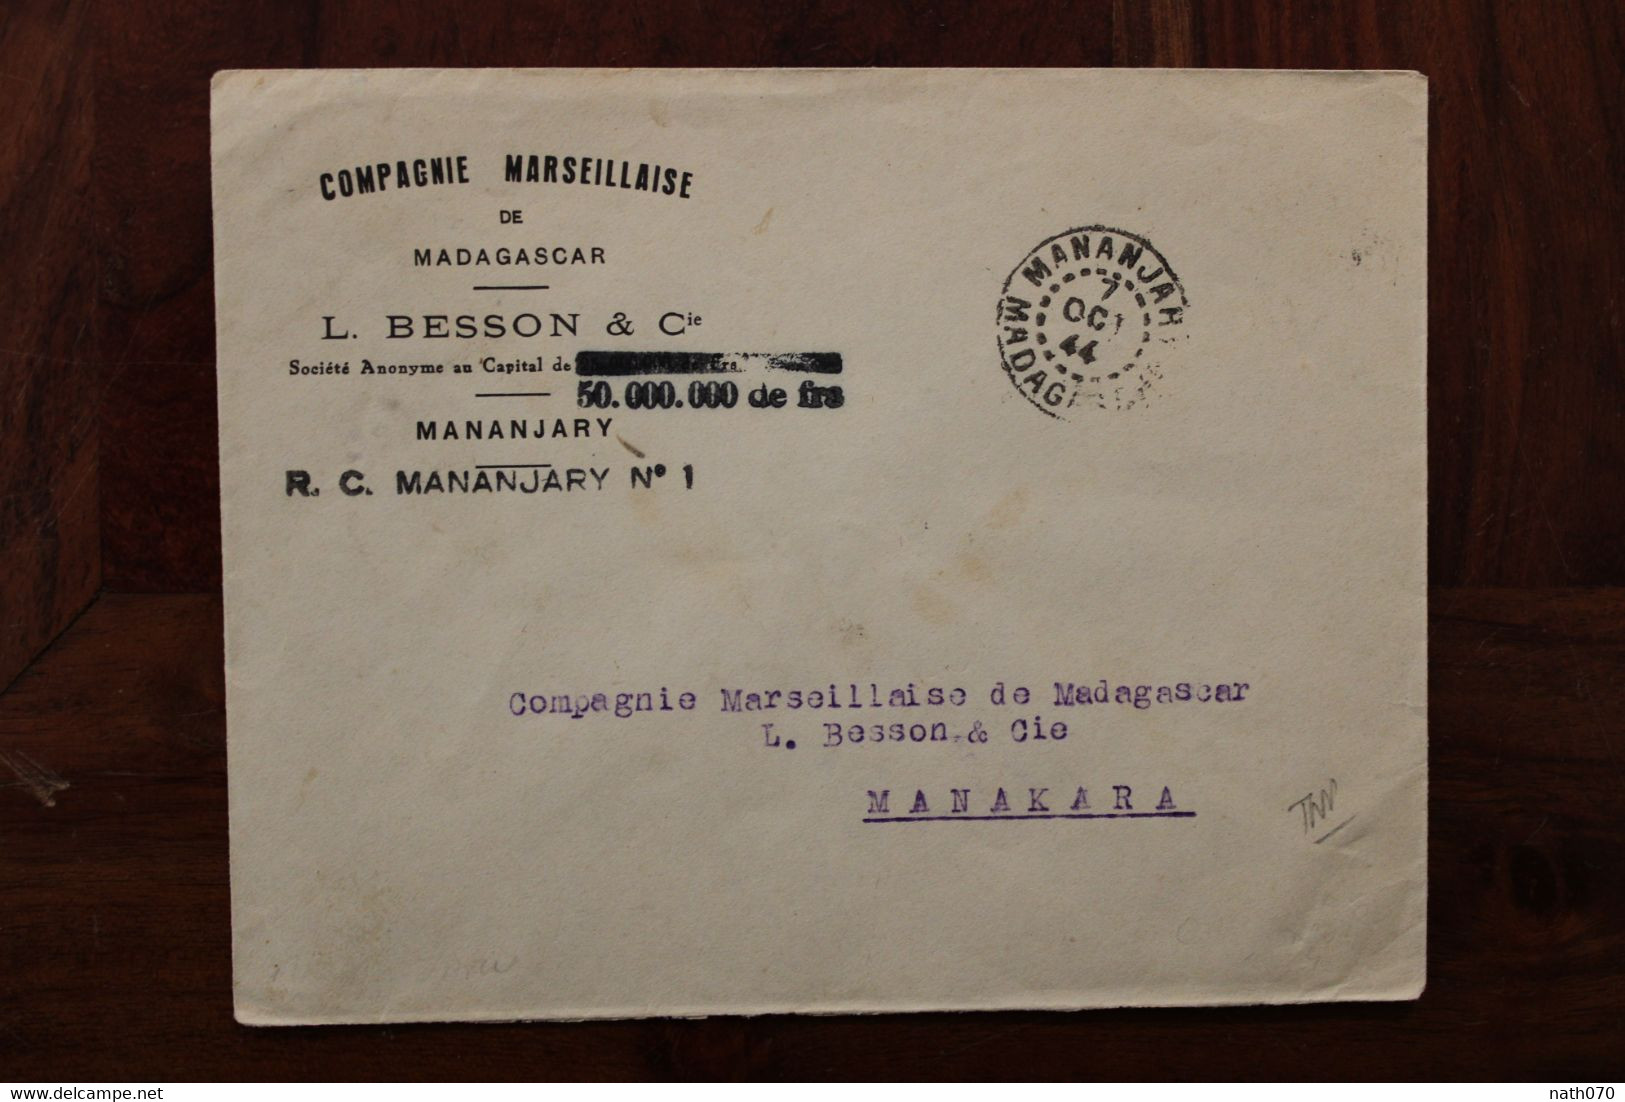 1944 Mananjary Manakara Madagascar France Cover Compagnie Marseillaise Timbre Seul - Briefe U. Dokumente